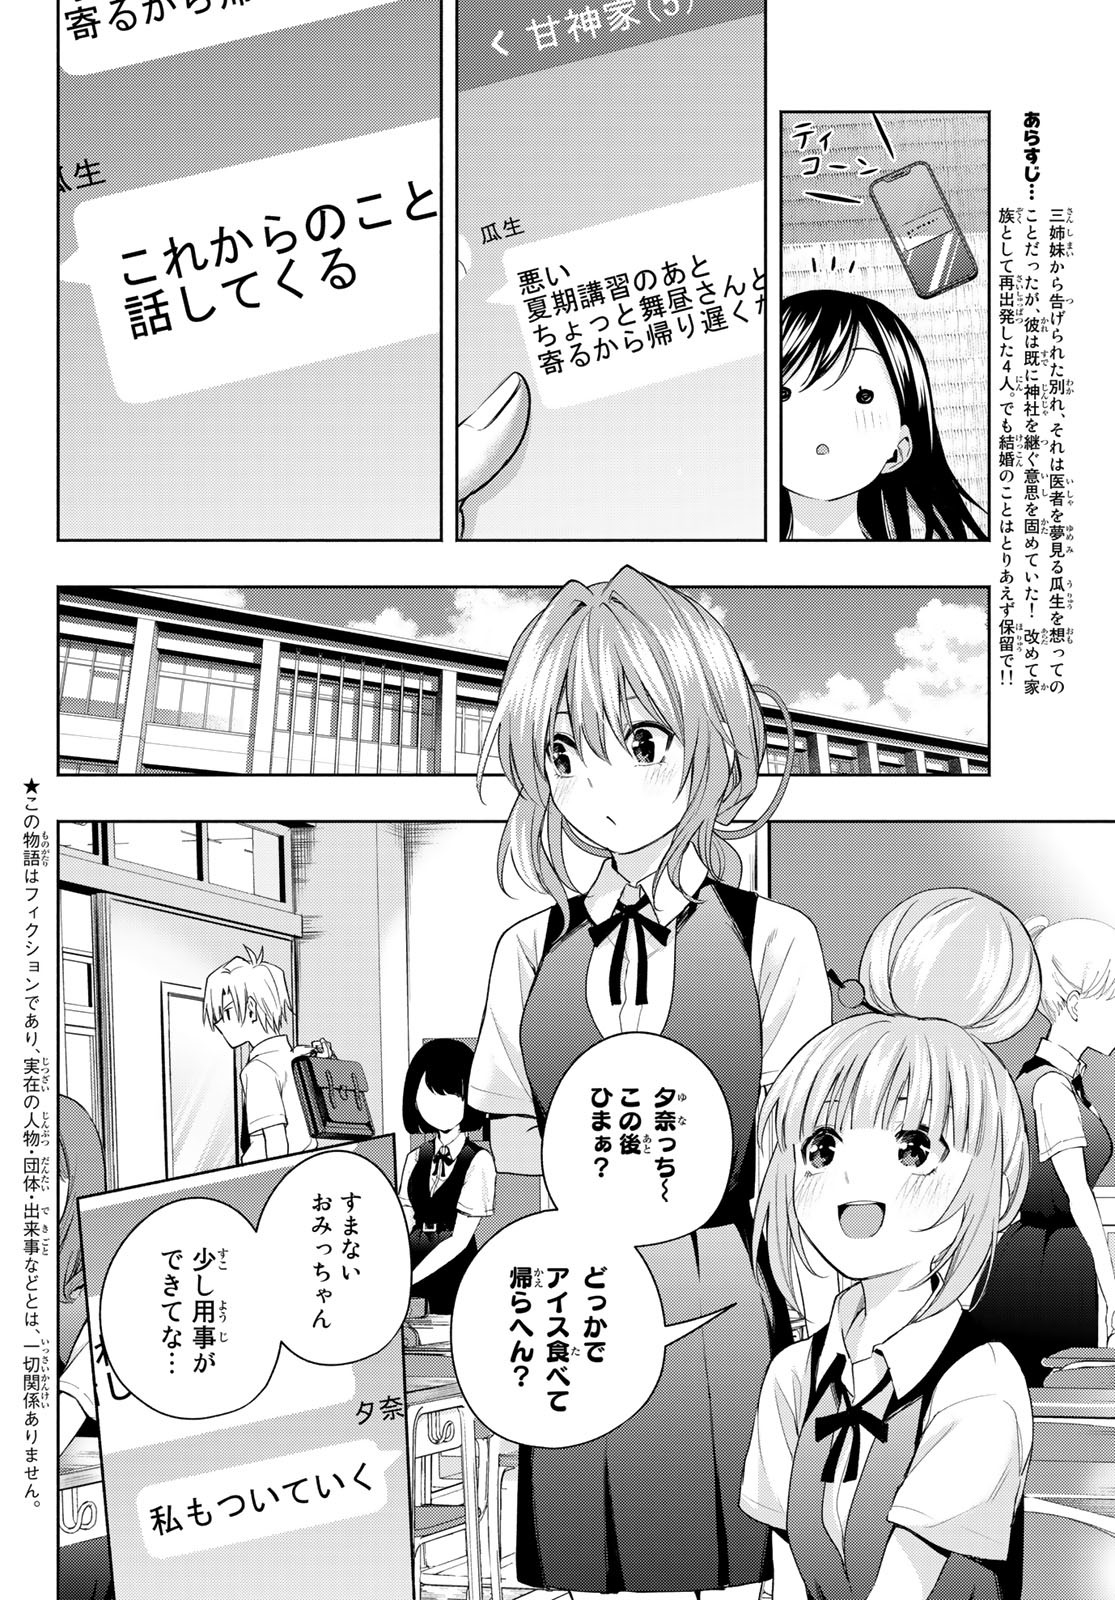 Amagami-san Chi no Enmusubi - Chapter 53 - Page 2